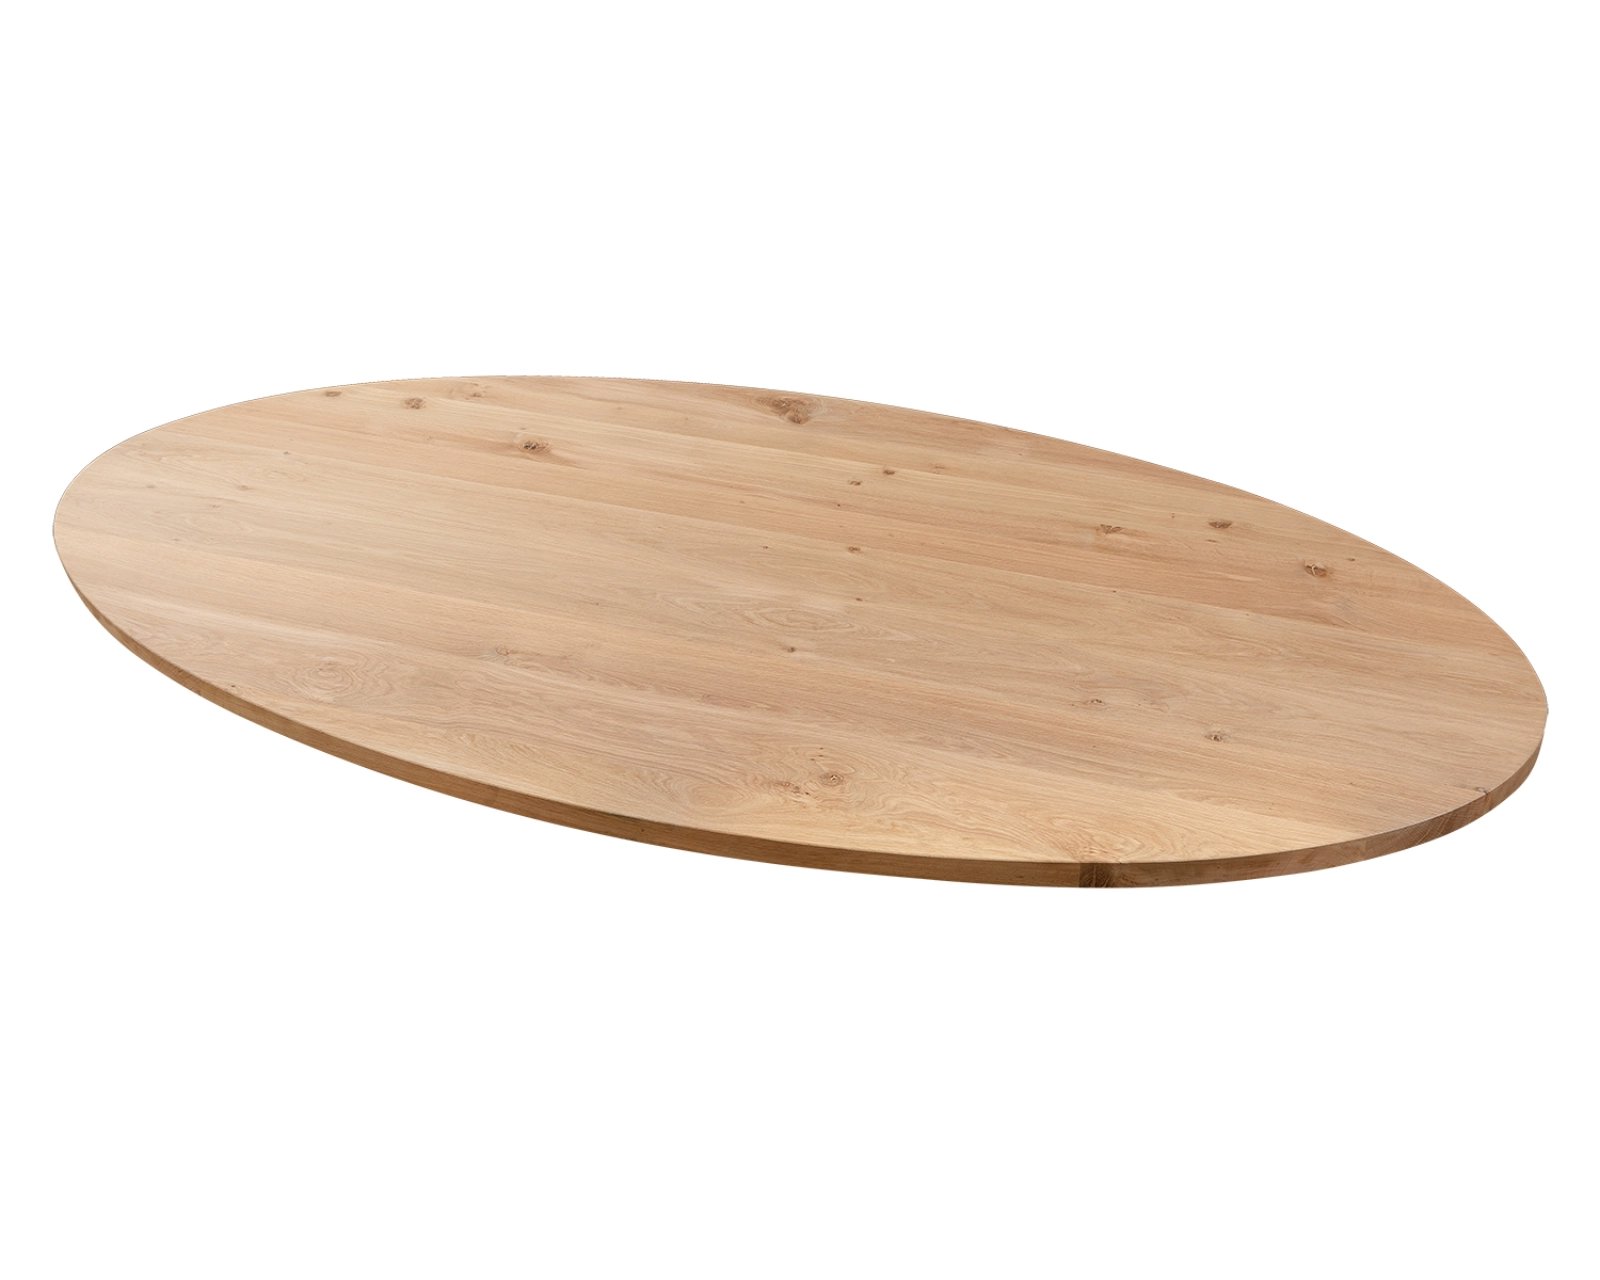 Oval oak dining table V-leg stainless steel